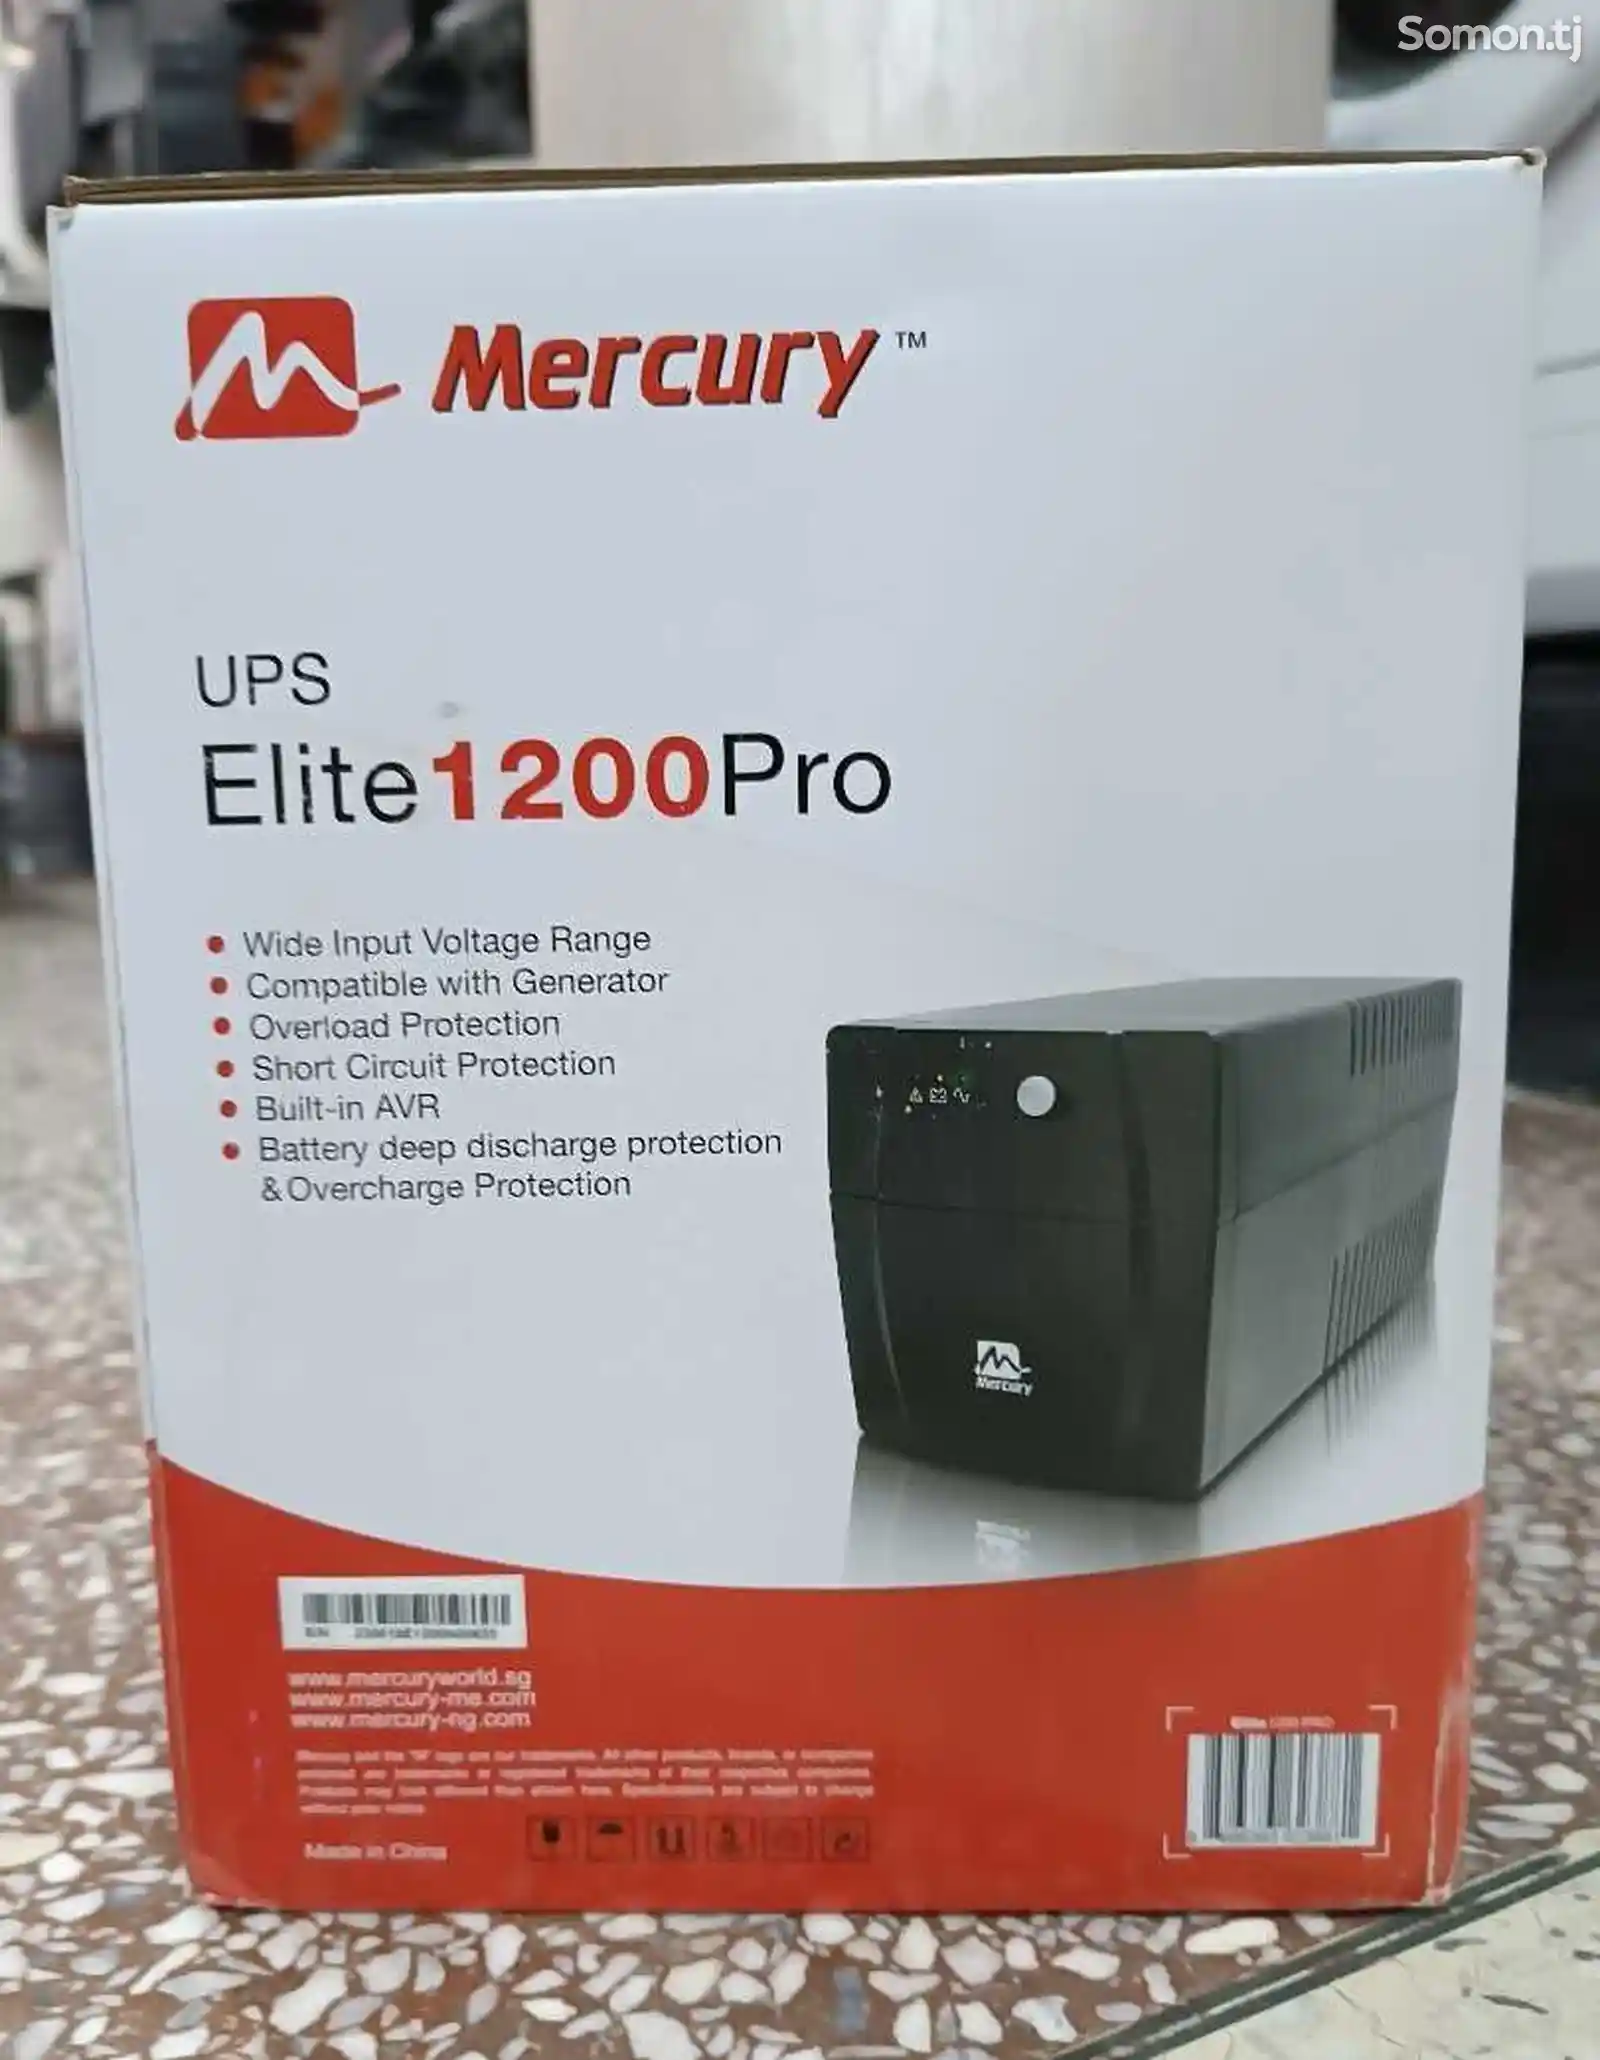 UPS Mercury Elite 1200 Pro-1